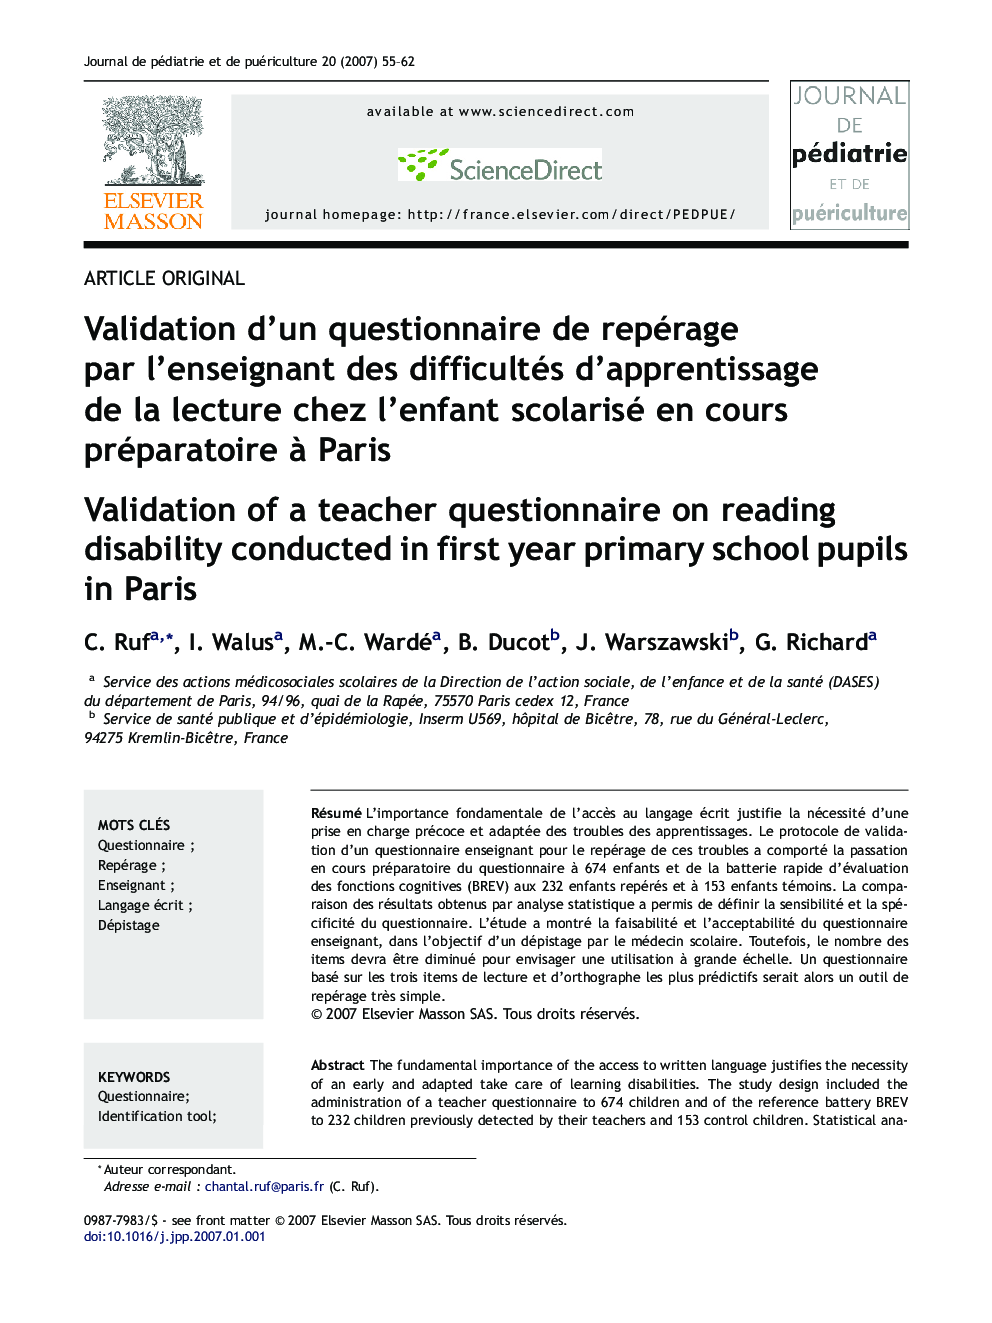 Validation d'un questionnaire de repérage par l'enseignant des difficultés d'apprentissage de la lecture chez l'enfant scolarisé en cours préparatoire à Paris